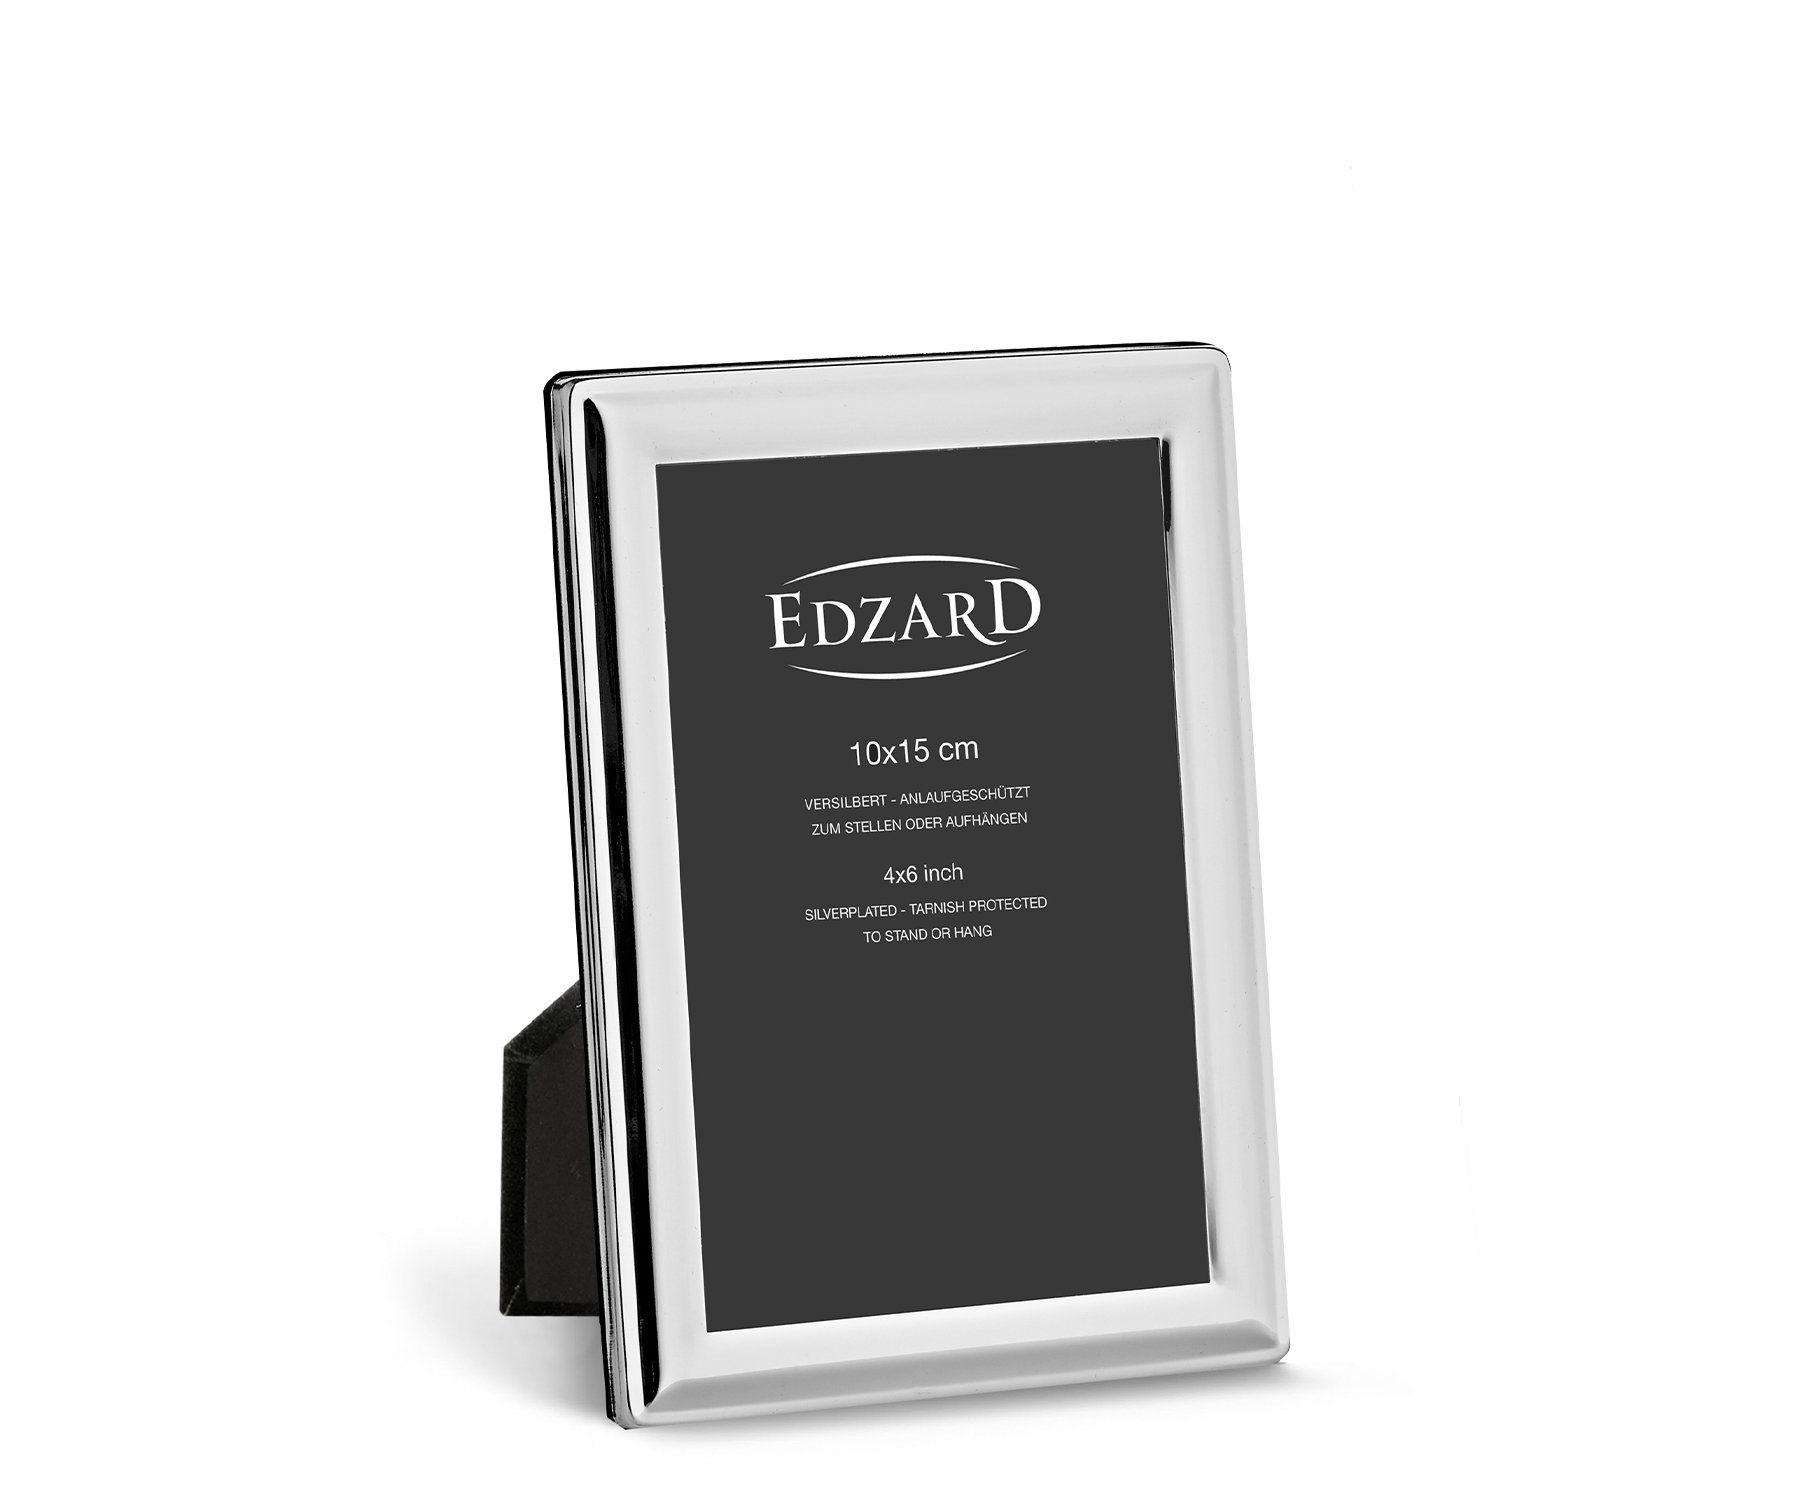 EDZARD Bilderrahmen Terni, versilbert und anlaufgeschützt, für 10x15 cm Foto